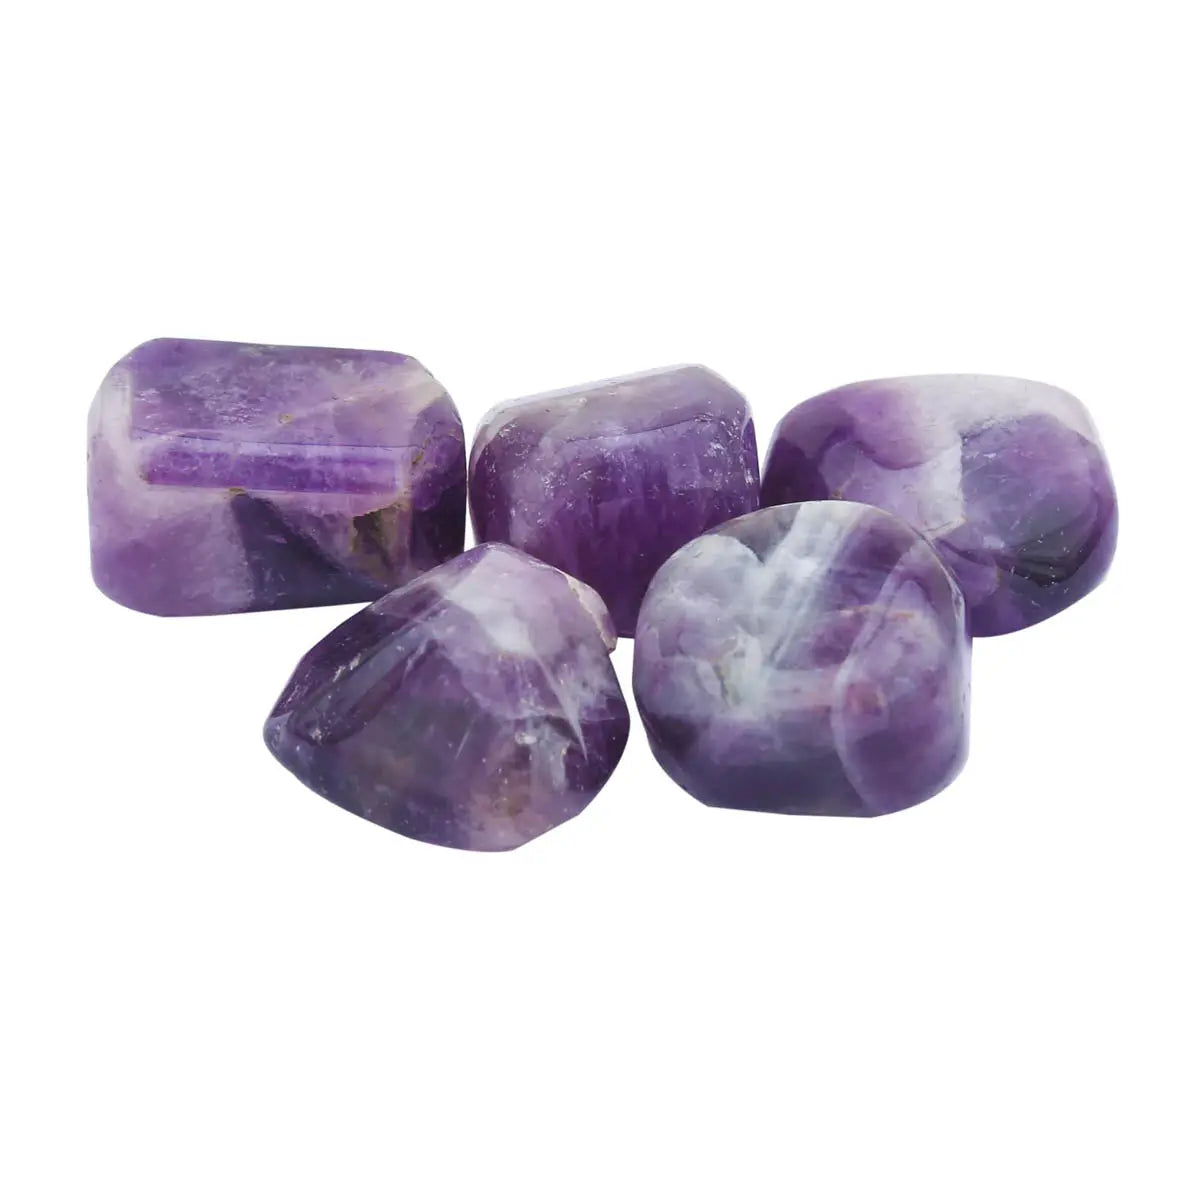 Amethyst- Chakra Crystals Healing Stones Healing Crystal Home